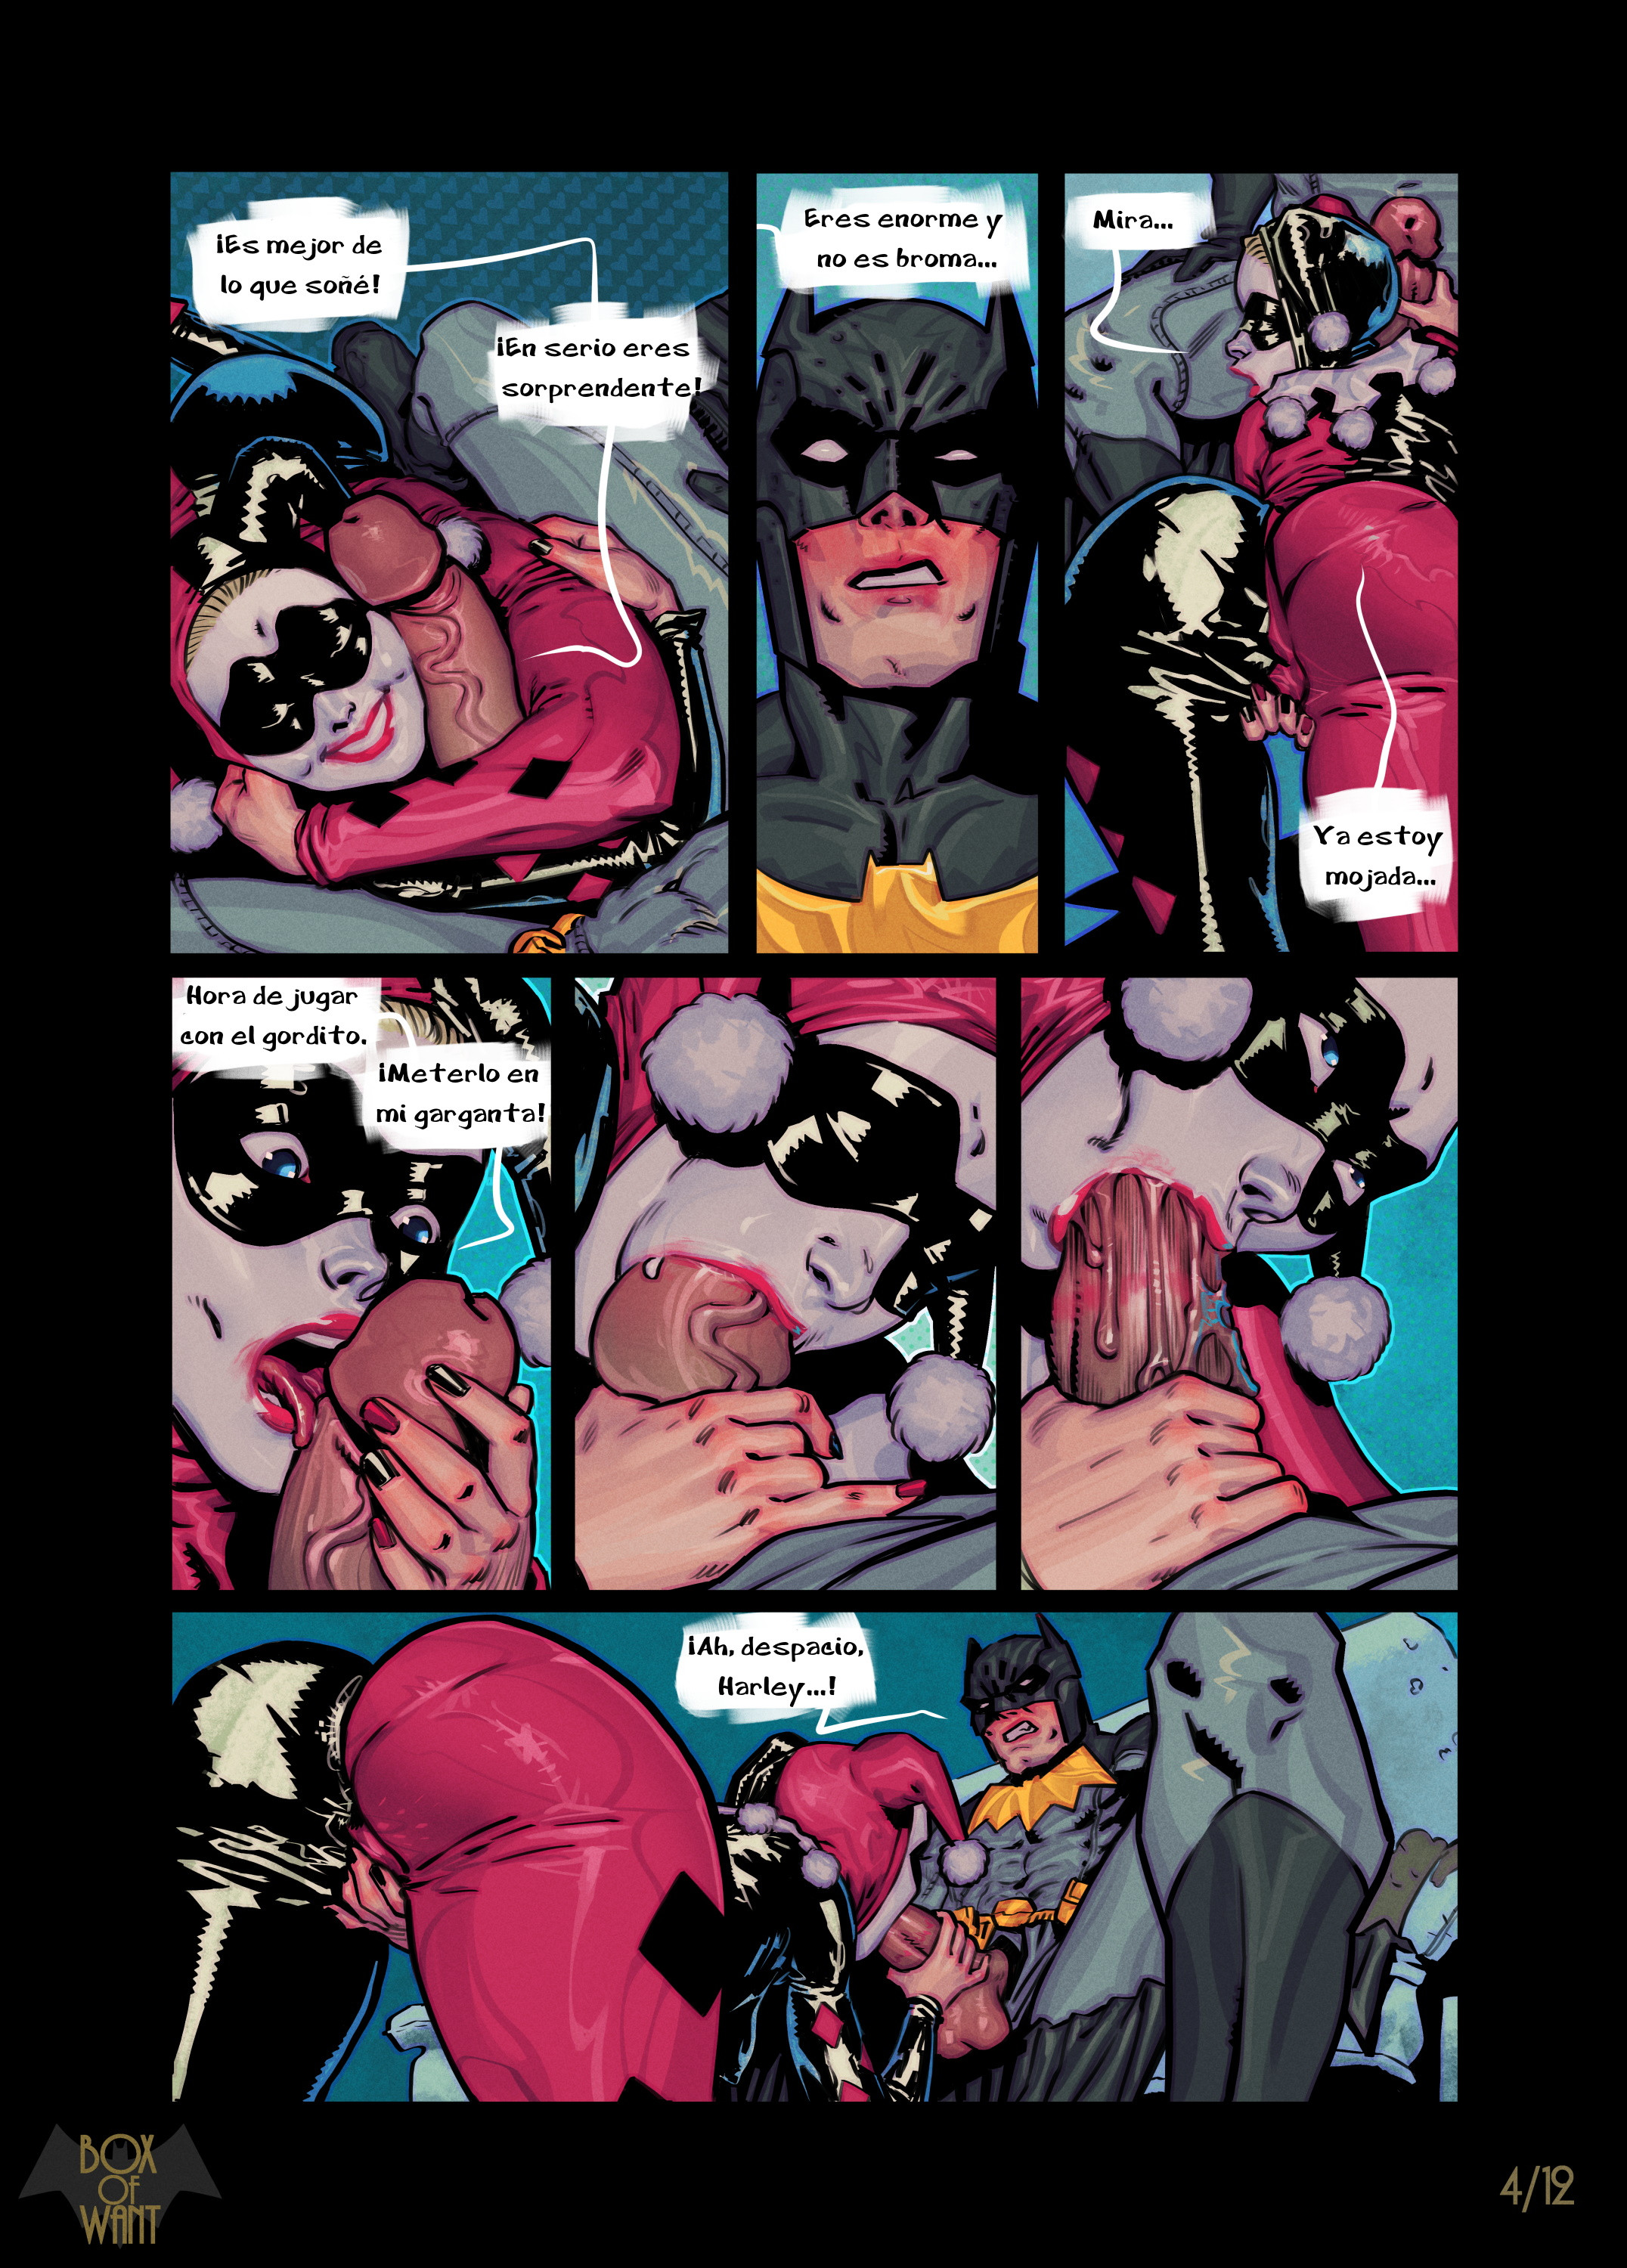 2152px x 3000px - Batman y Harley Quinn: Fantasias de una noche - Vercomicsporno